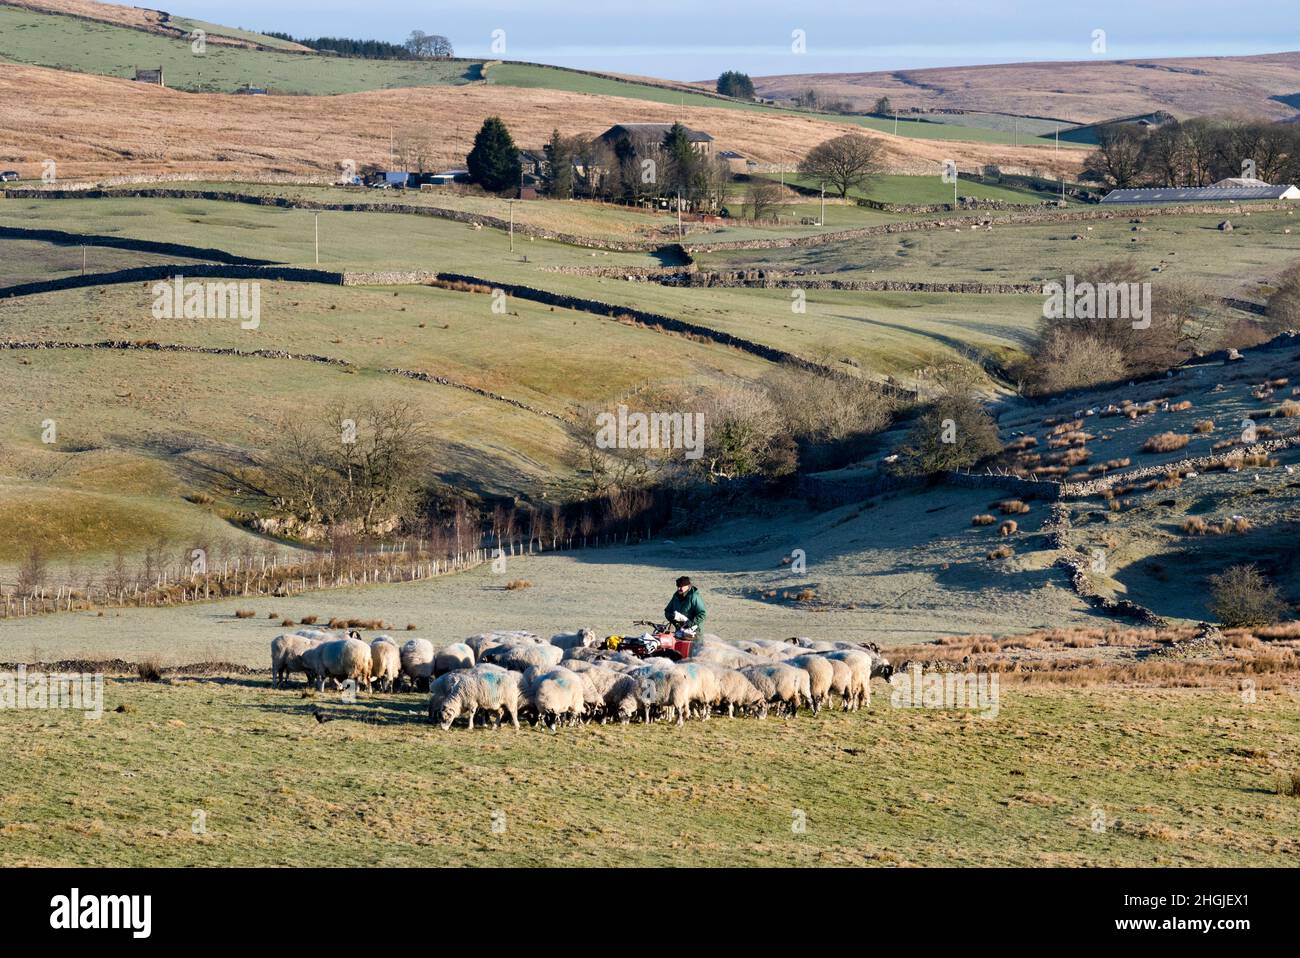 Un fermier donne l'alimentation d'hiver à son mouton Swaledale, Gauber, près de Ribblehead, Ribblesdale, Yorkshire Dales National Park, Royaume-Uni Banque D'Images